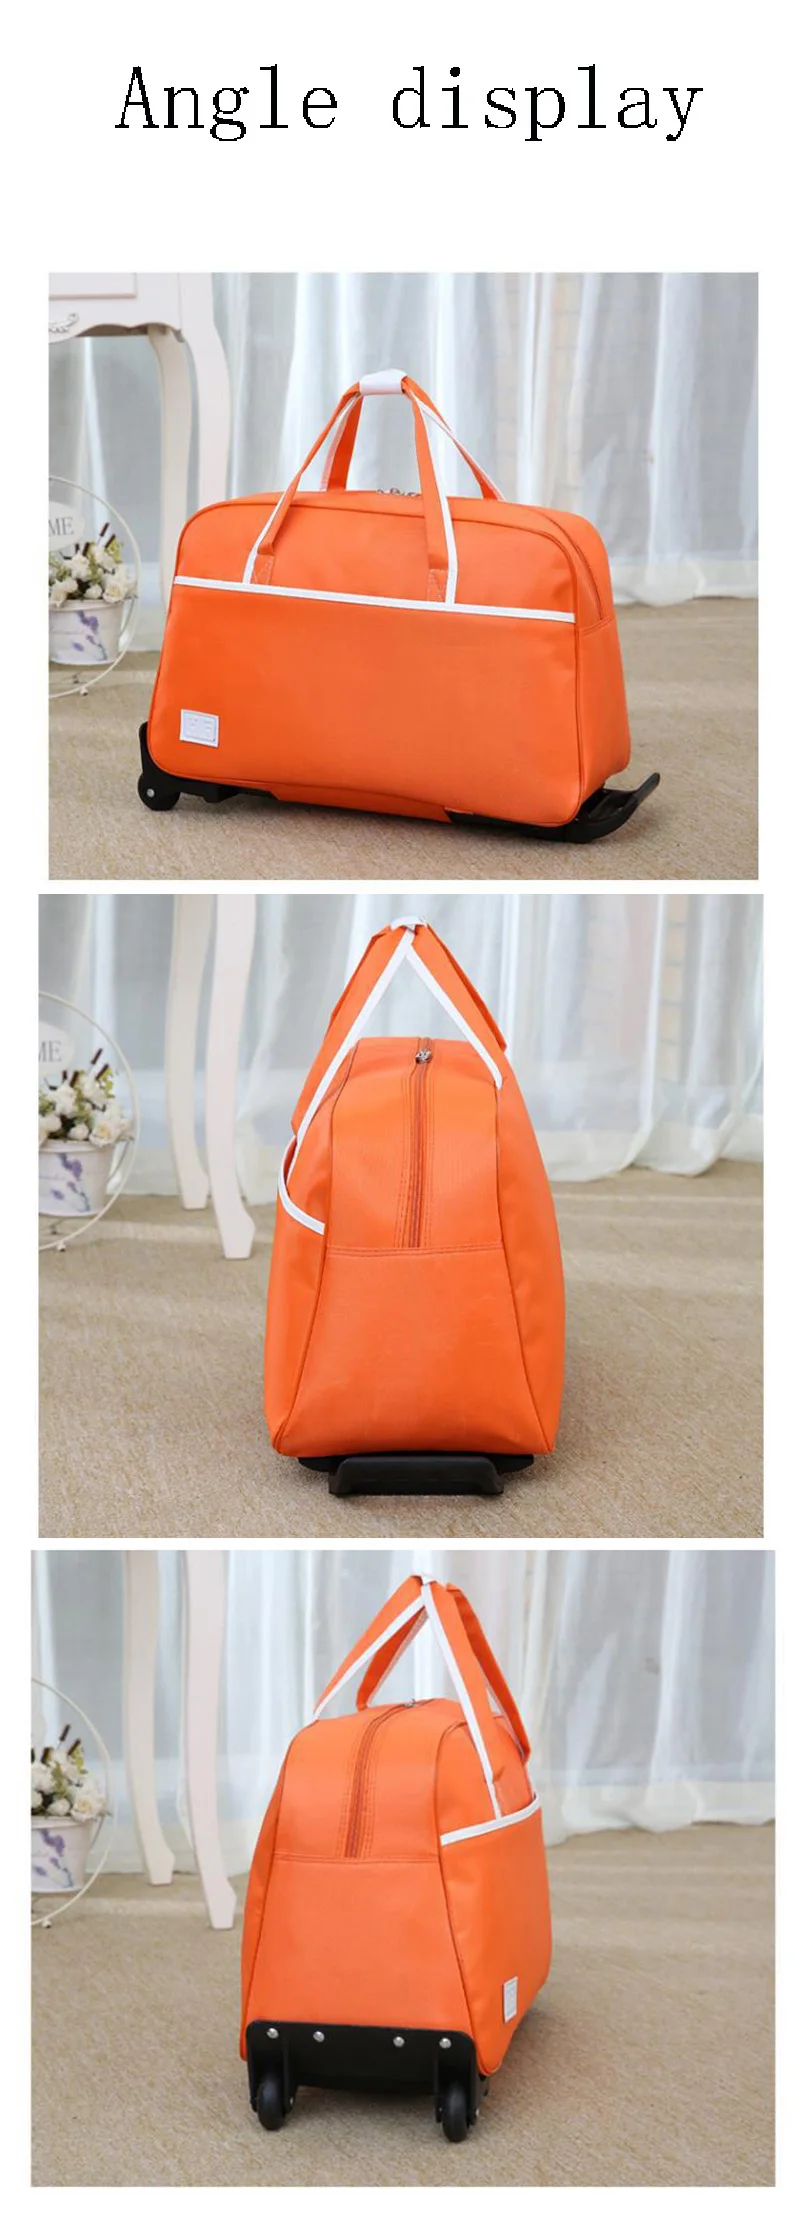 LXHYSJ Модный водонепроницаемый чемодан толстый стиль Прокат троллейбусов для женщин и мужчин дорожные сумки чемодан с колесом